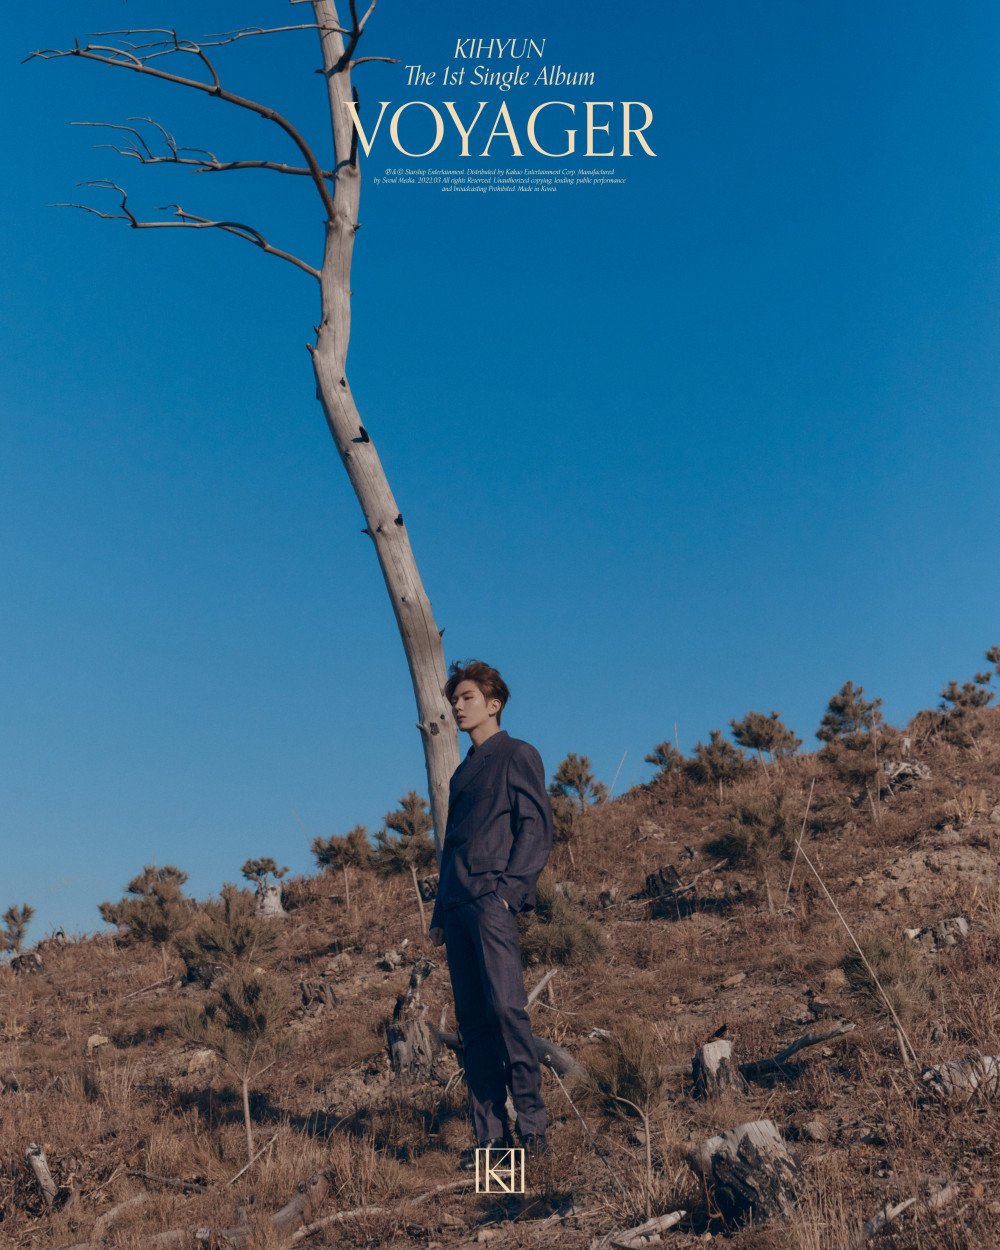 [Дебют] Кихён из MONSTA X сингл-альбом "VOYAGER": музыкальный клип